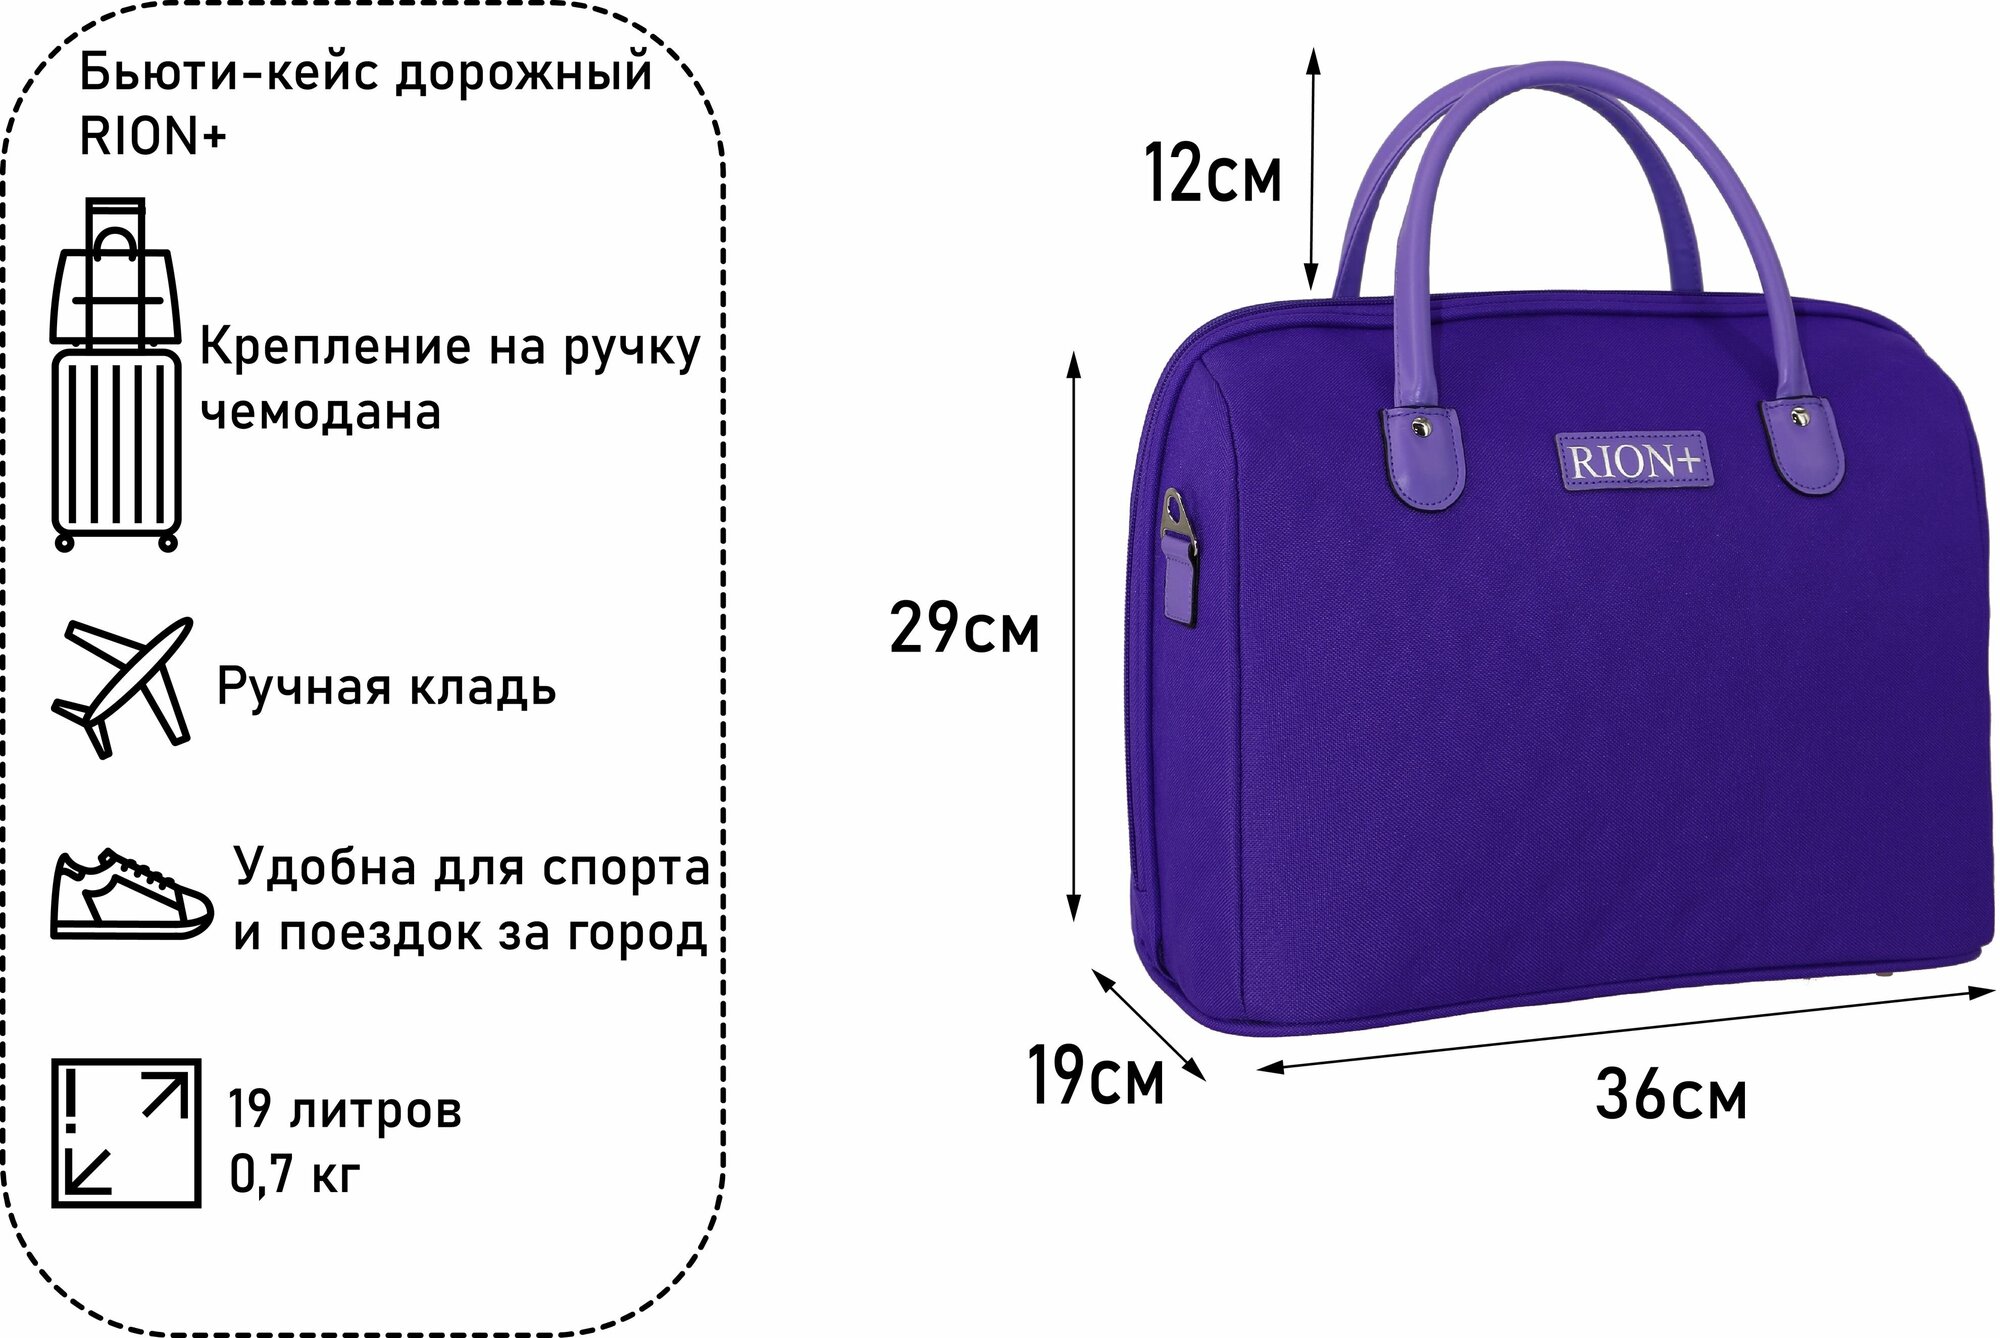 Женская дорожная сумка с ремнем на ручку чемодана Рион+ (RION+) / ручная кладь / саквояж для города, R236, Тканевая, 20 литров, сиреневый - фотография № 2